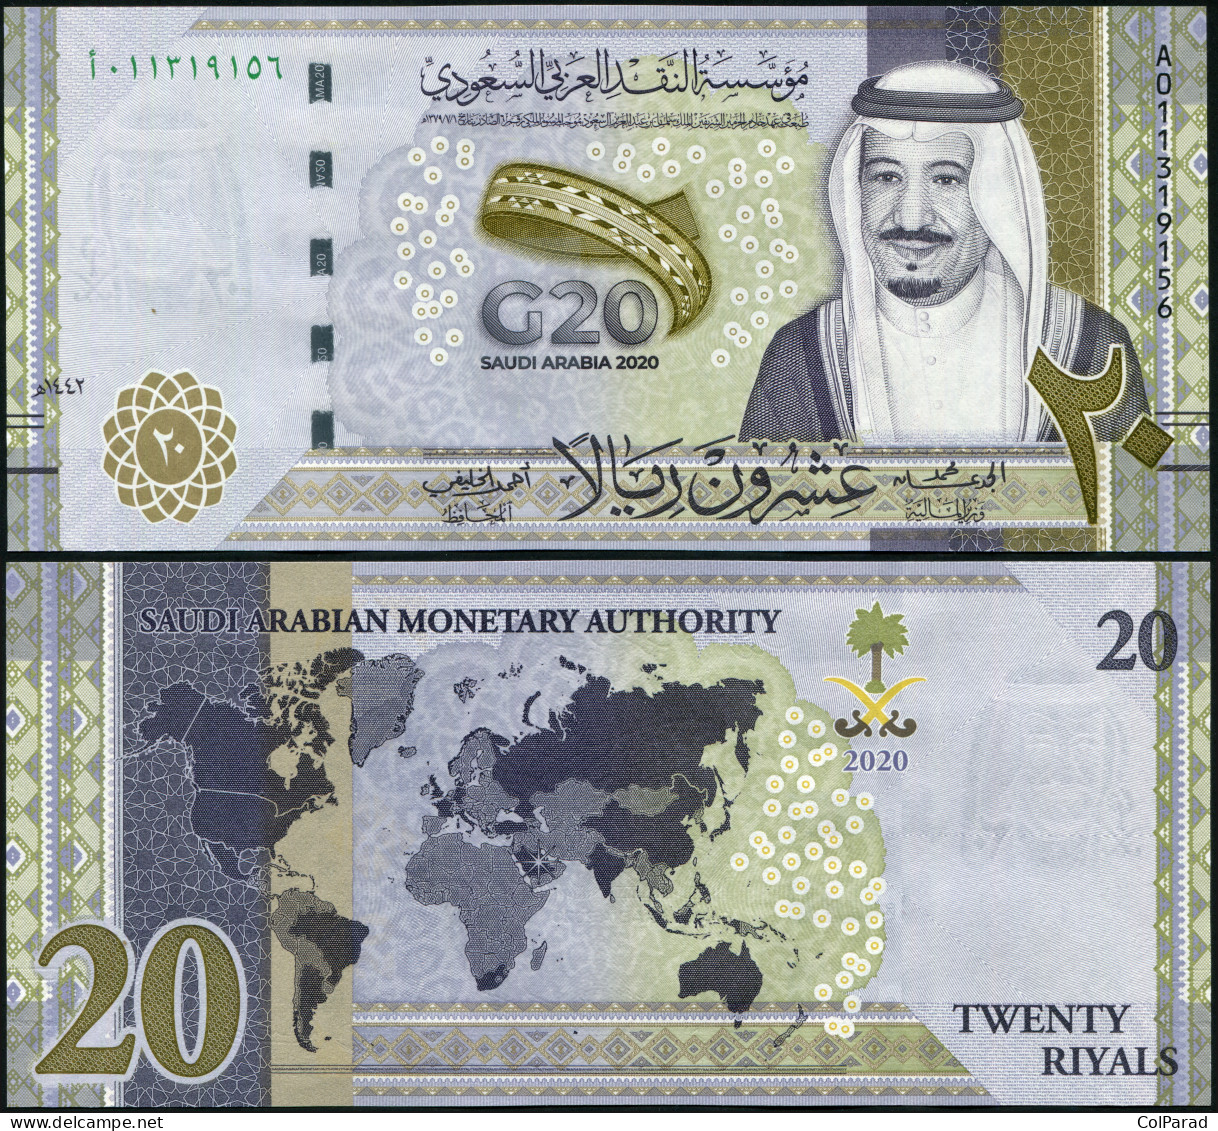 SAUDI ARABIA 20 RIYALS - 2020 - Paper Unc - P.NL Banknote - G20 Summit - Arabia Saudita